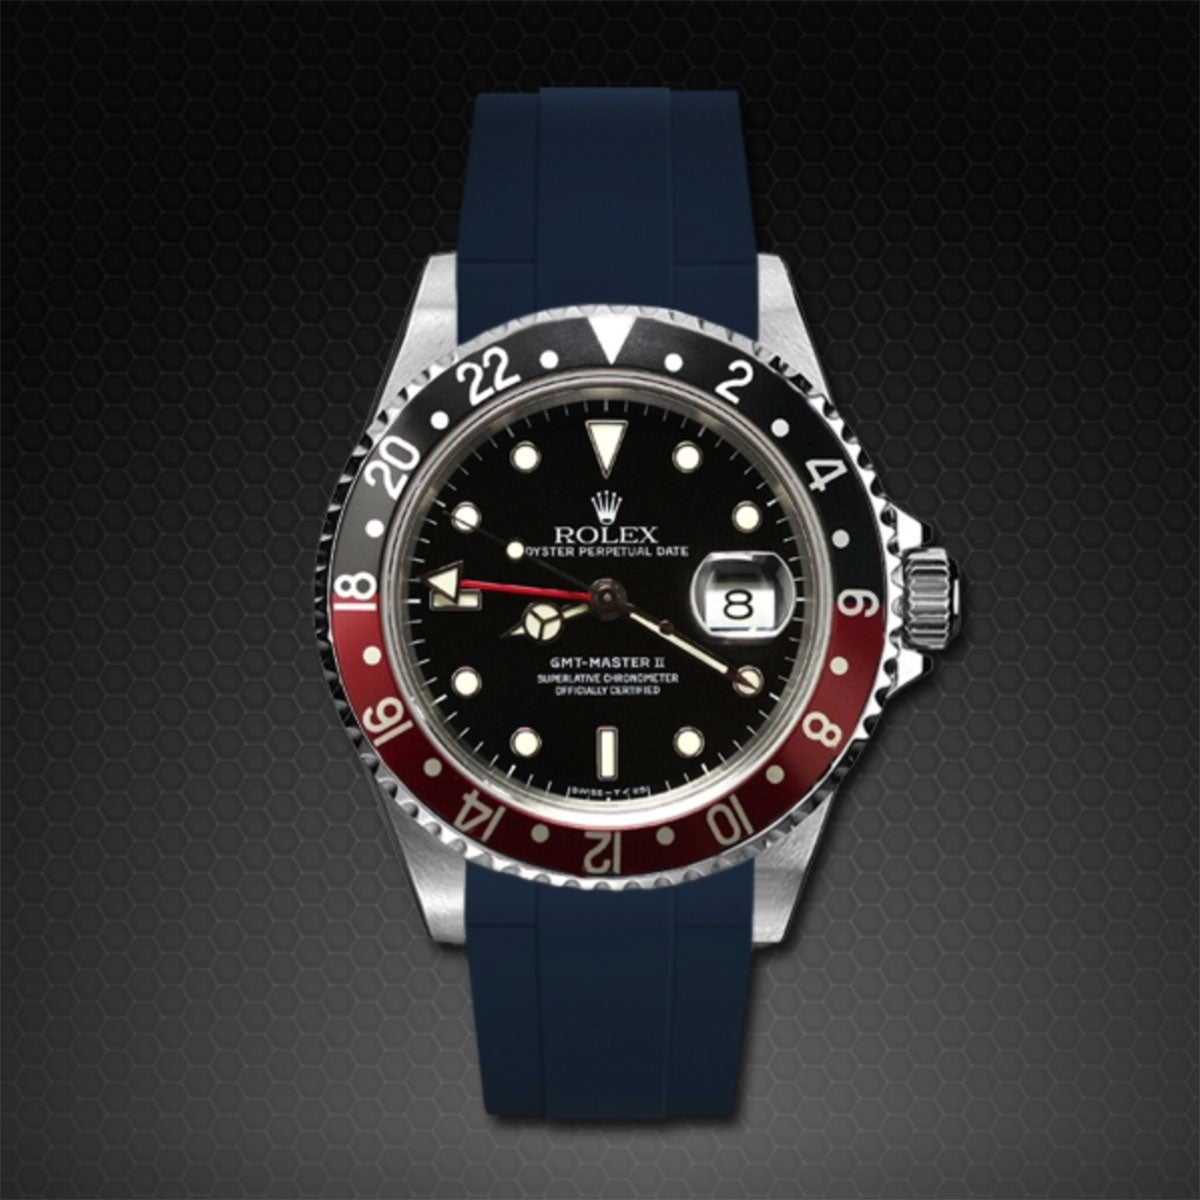 Rolex - Rubber B - Bracelet caoutchouc pour GMT Master II Non-Ceramic - Série classique - watch band leather strap - ABP Concept -